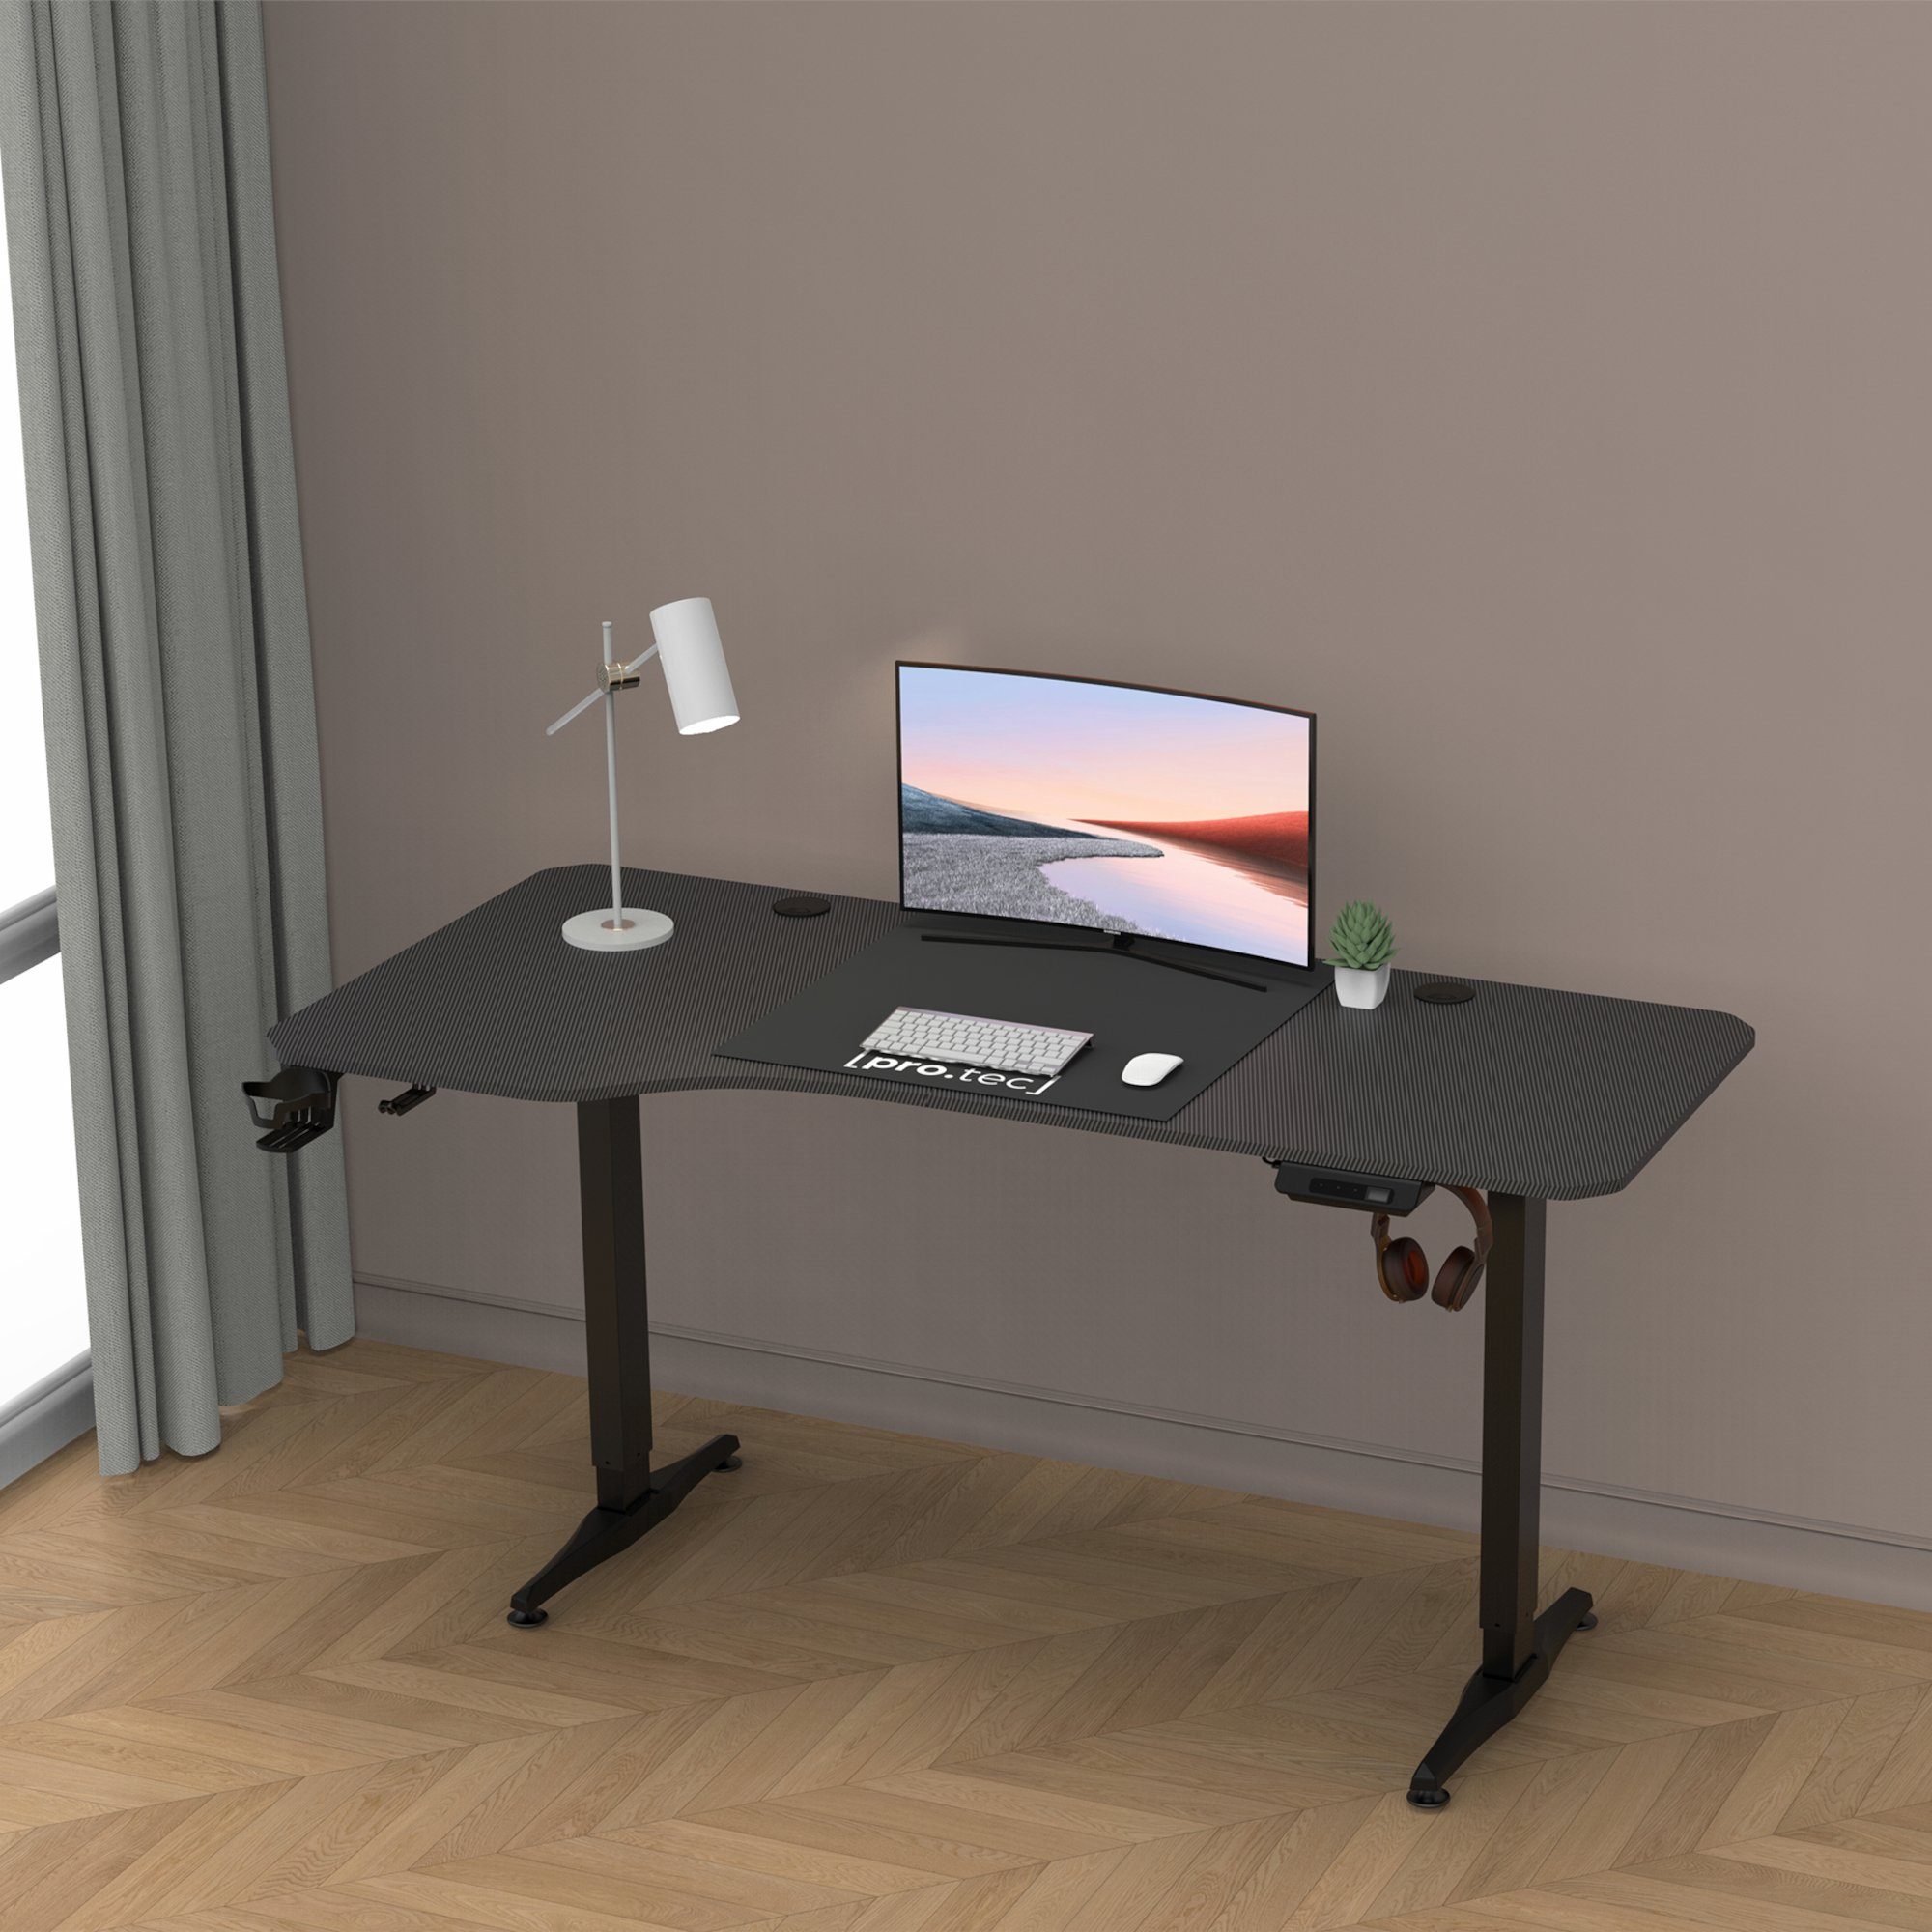 Höhenverstellbarer pro.tec »Oxnard« Schwarz 160x75cm Schreibtisch, Schreibtisch